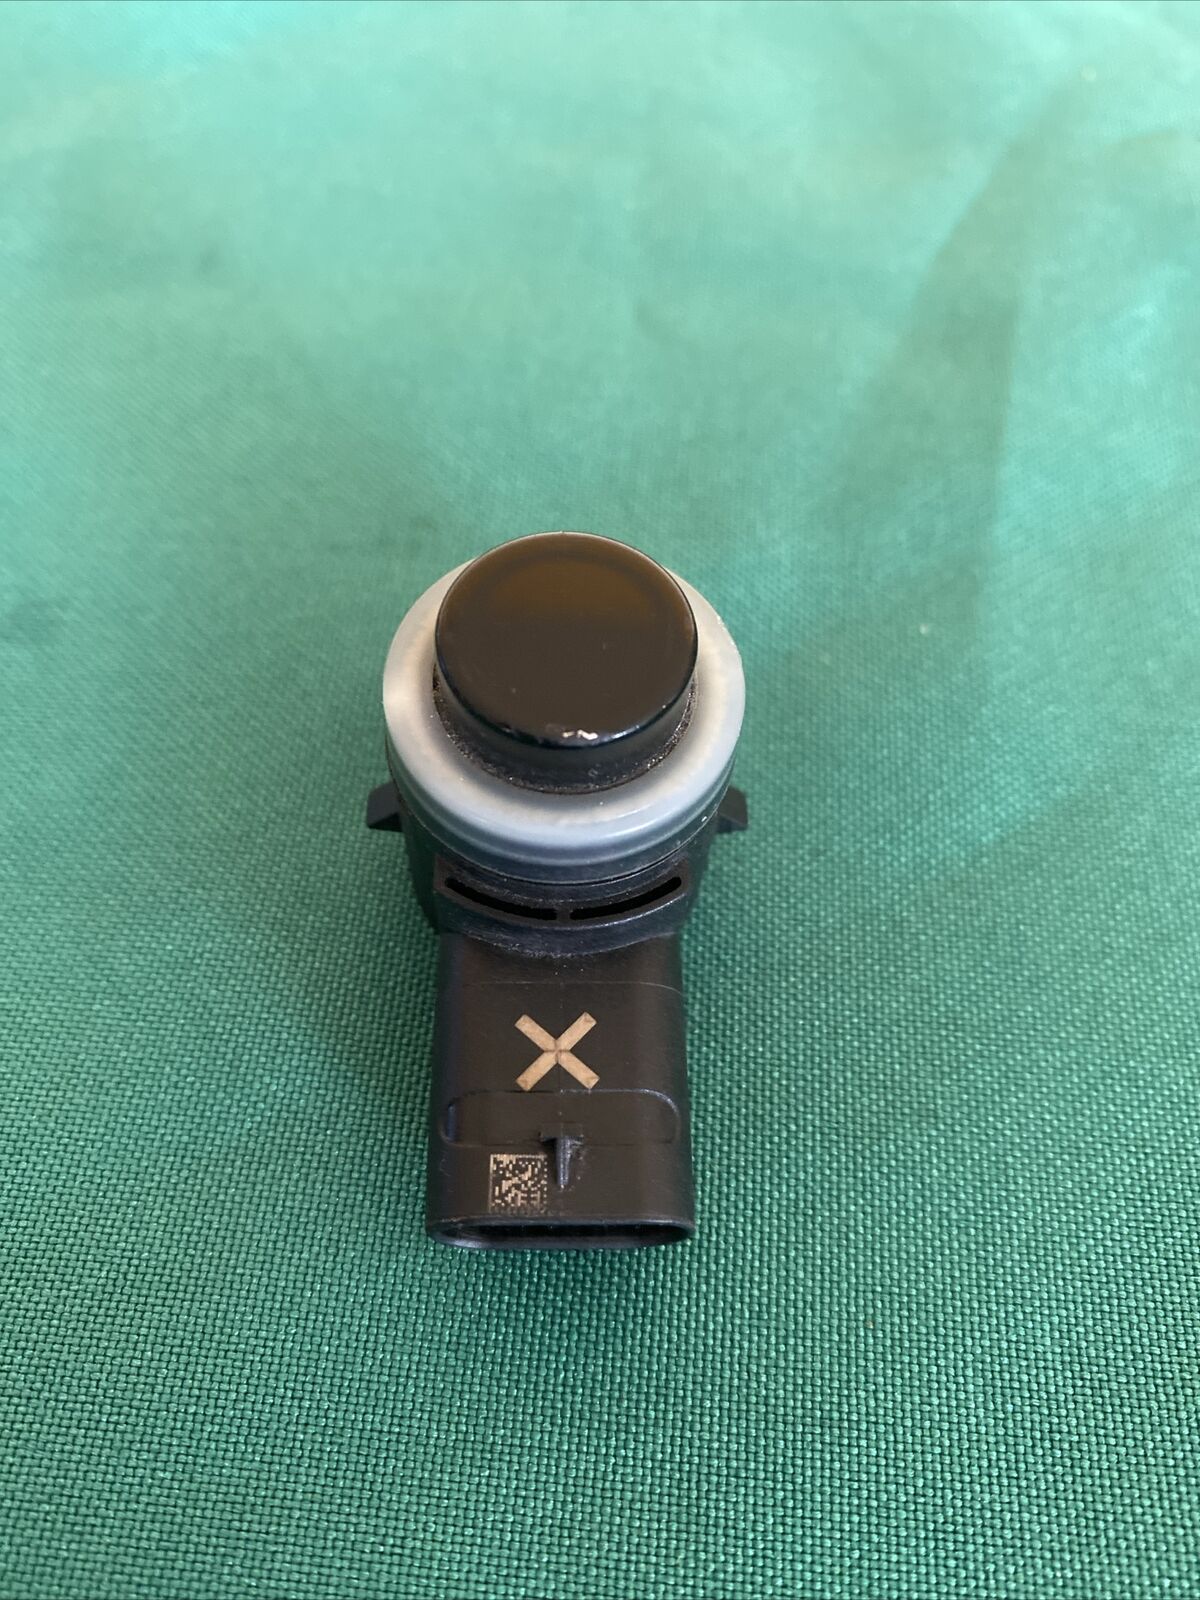 OEM Bumper PDC Parking Sensor 1741484-01-A black for Tesla S 3 Y X 